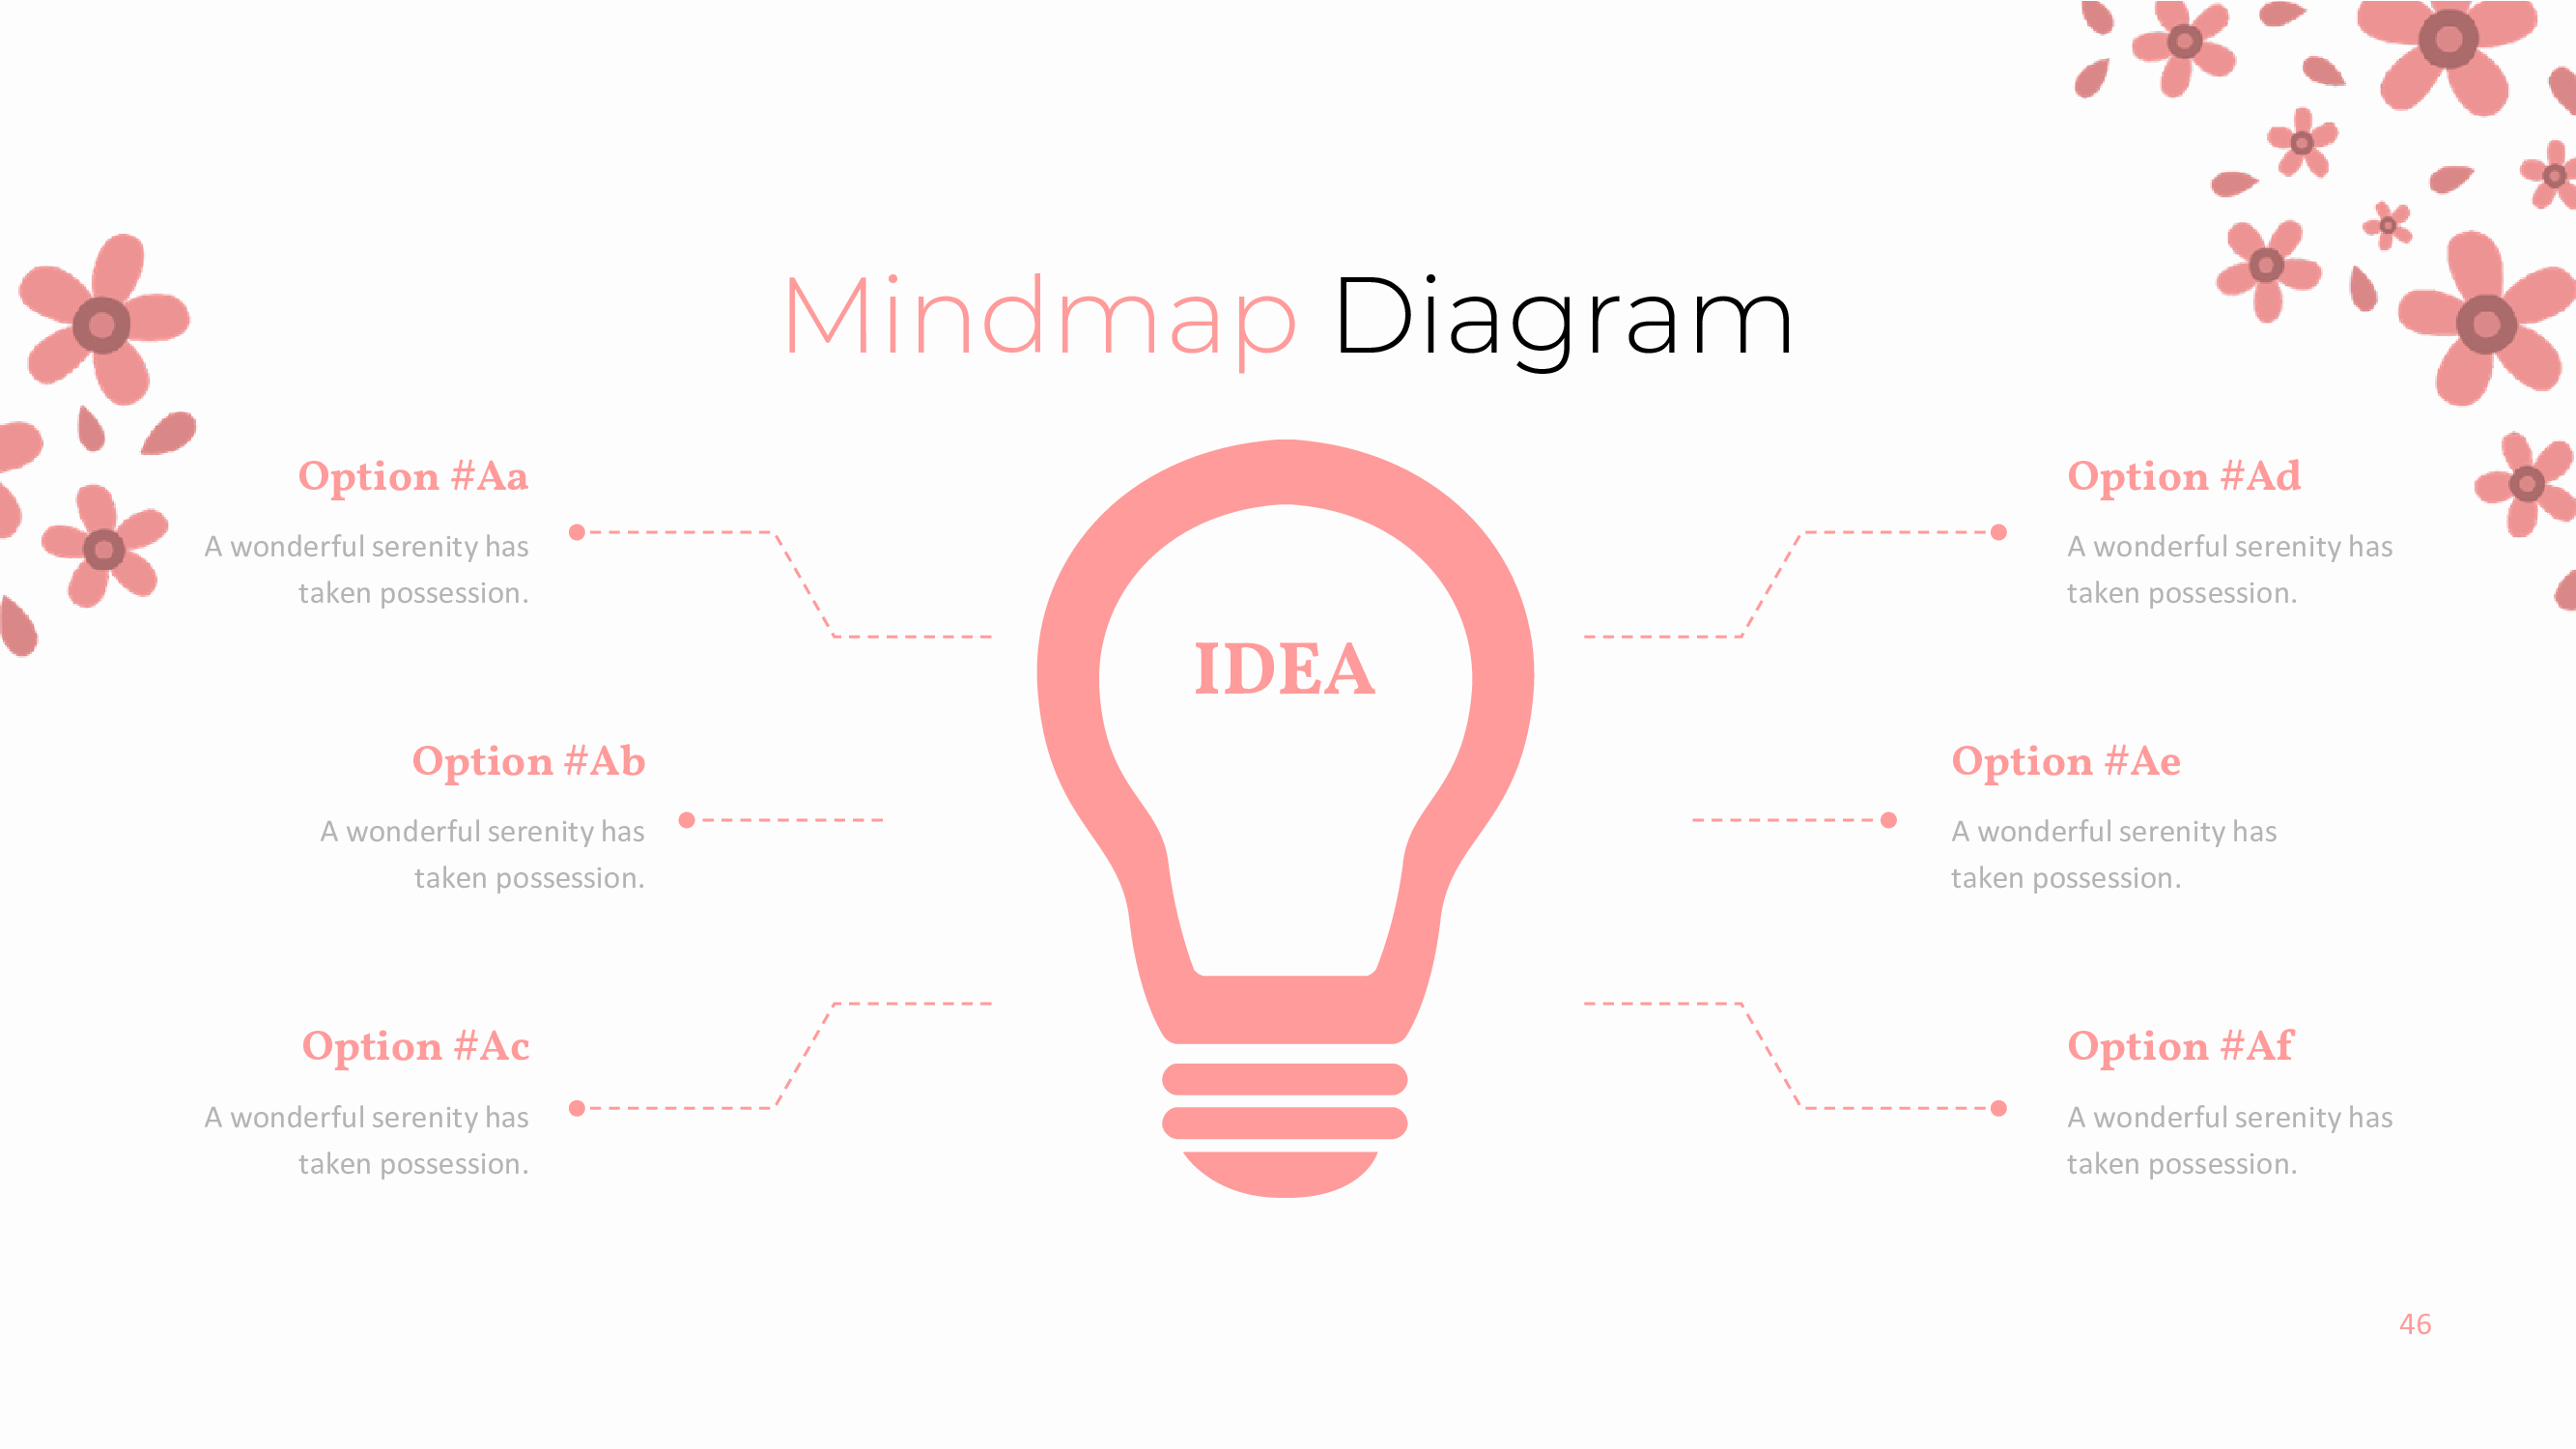 Slide with mindmap diagram.